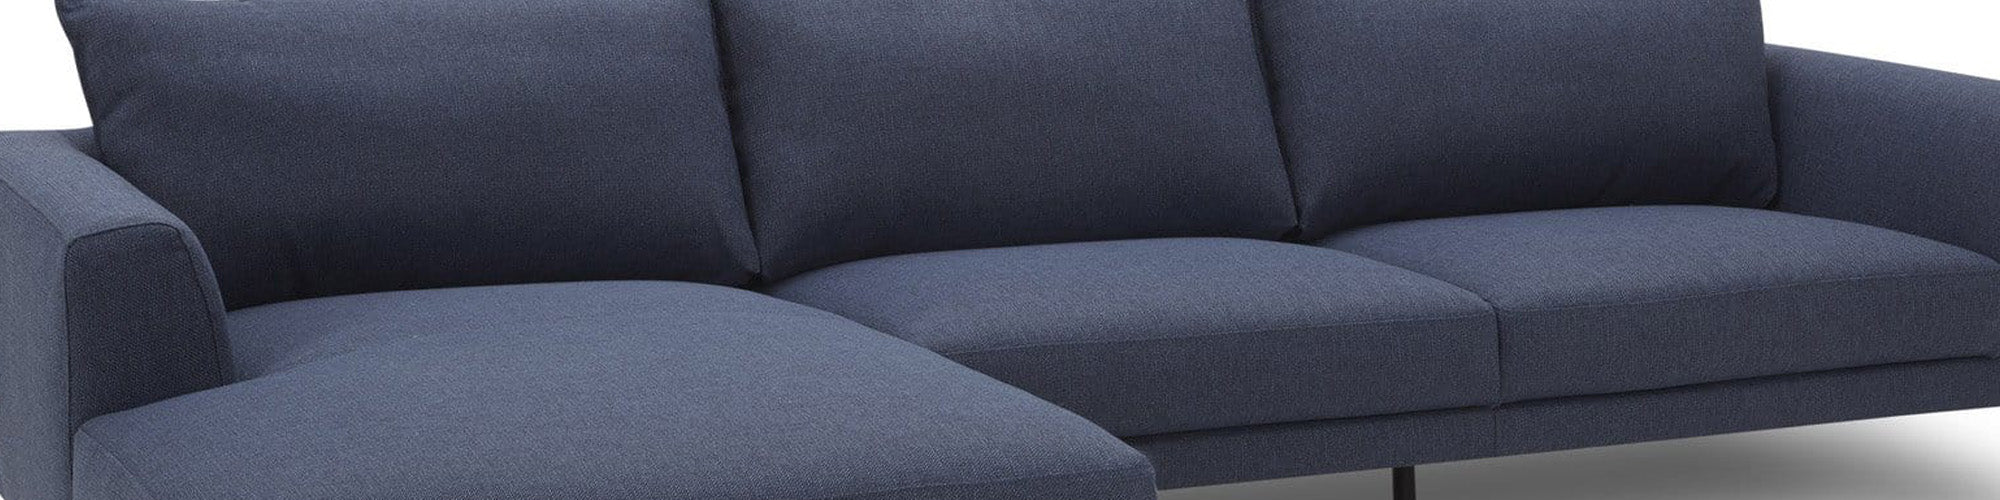 Blå sofa med sjeselong